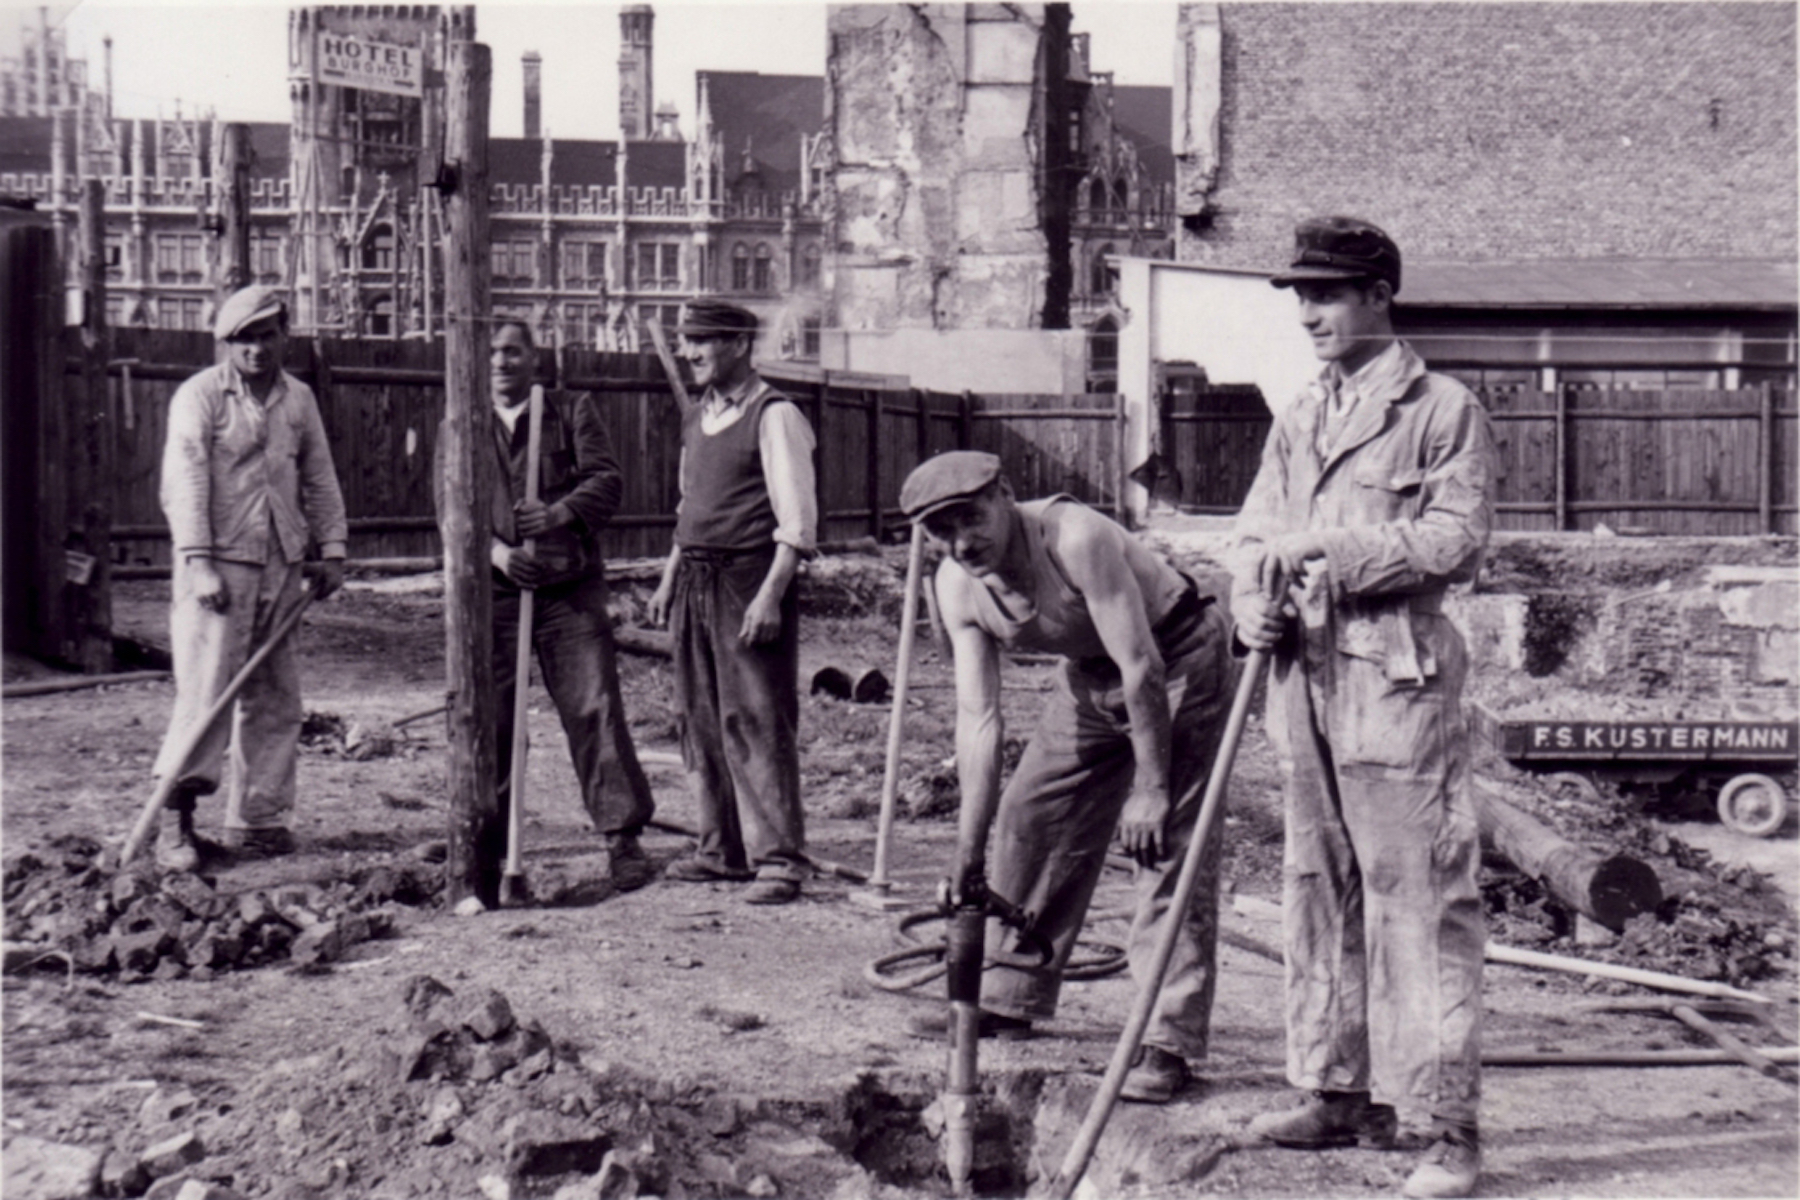 Fleißig bei der Arbeit in 1947. – ©Kustermann